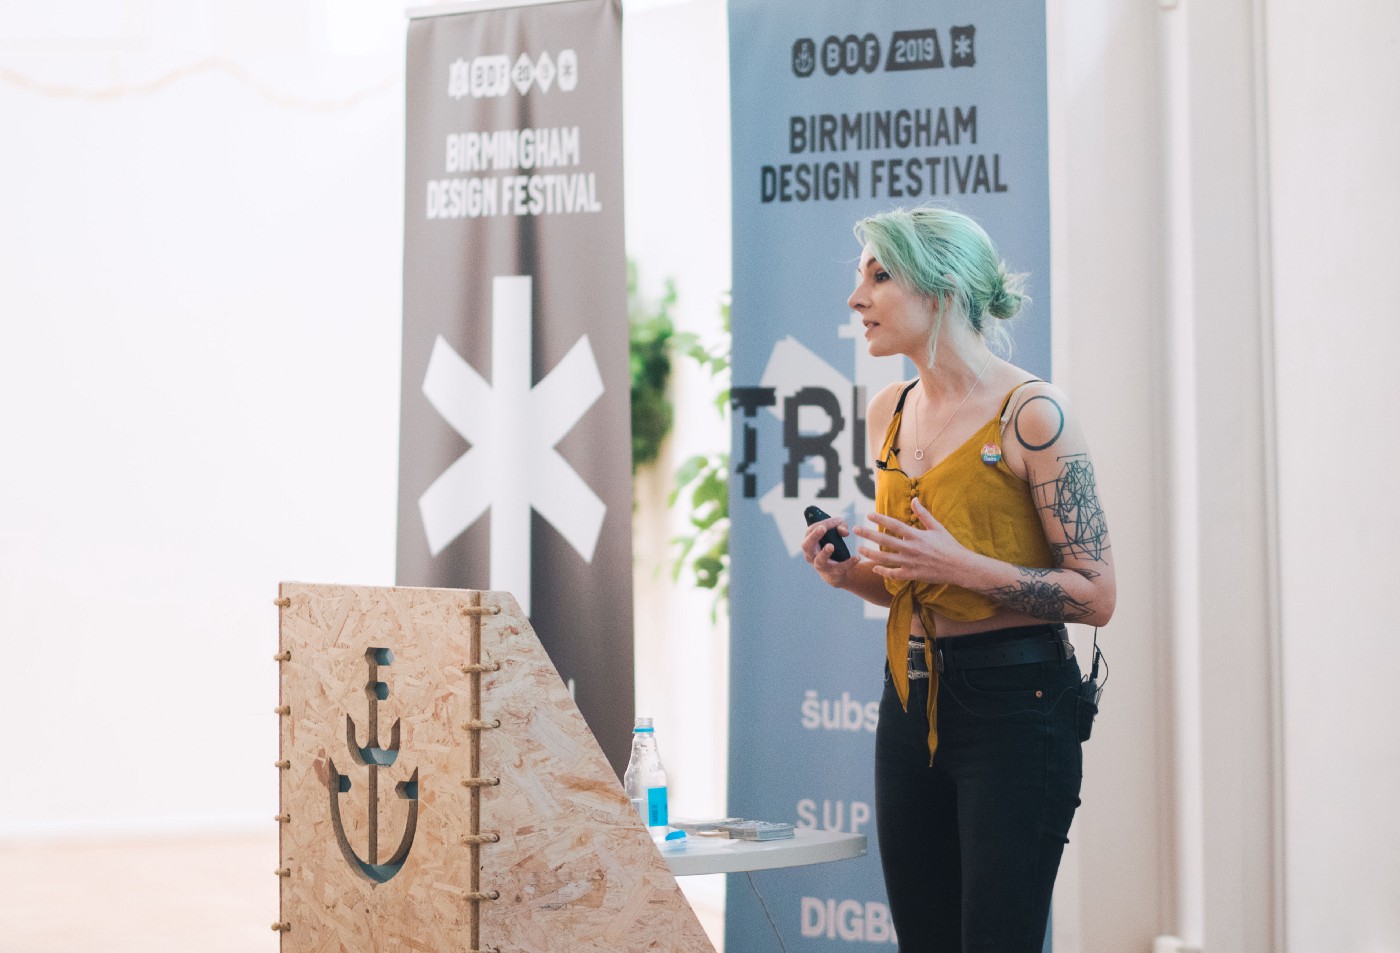 Eriol speaking at Birmingham Design Festival